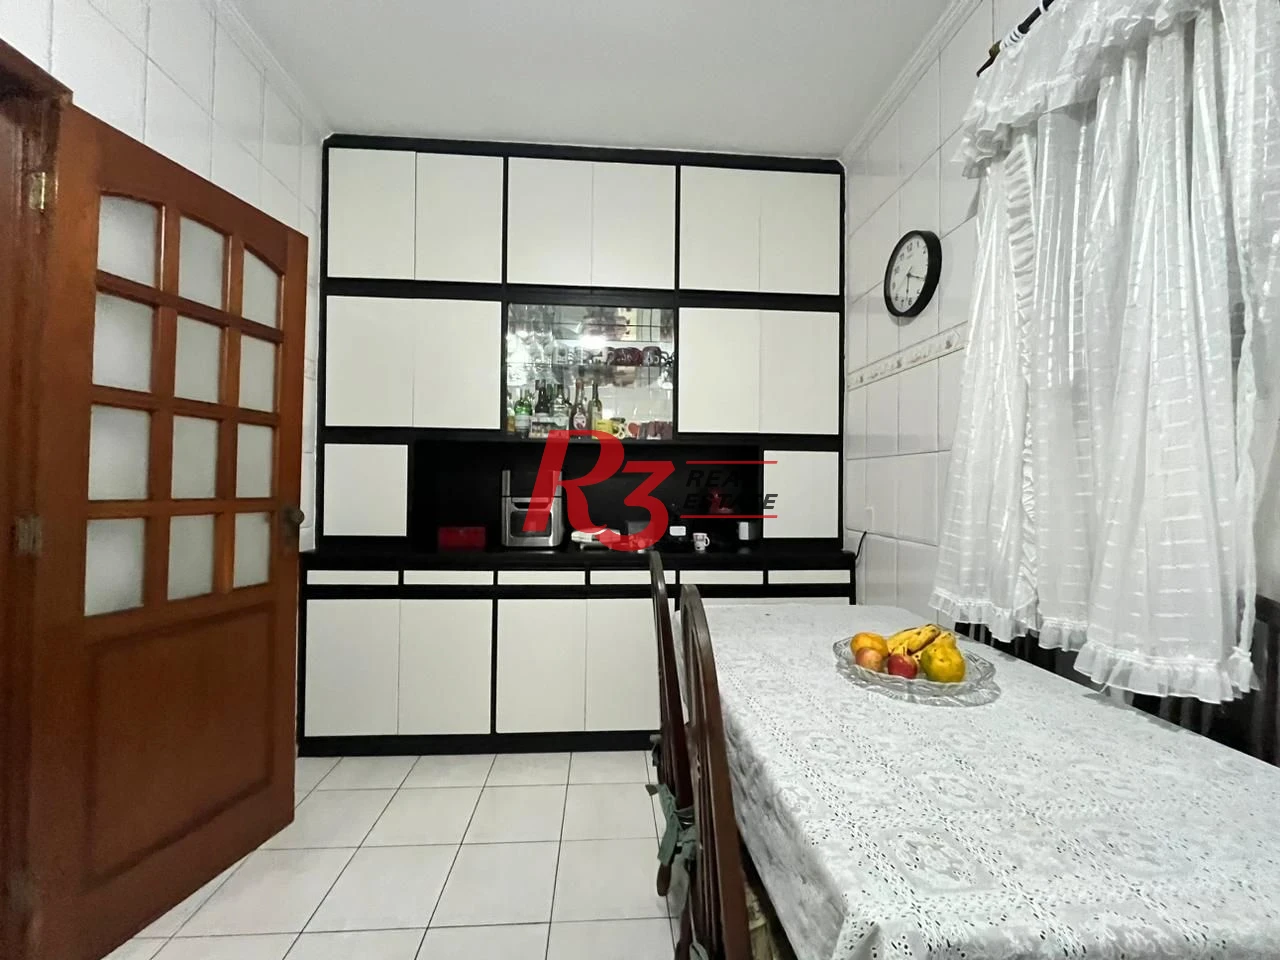 Apartamento com 3 dormitório c suite 154 m²  Gonzaga